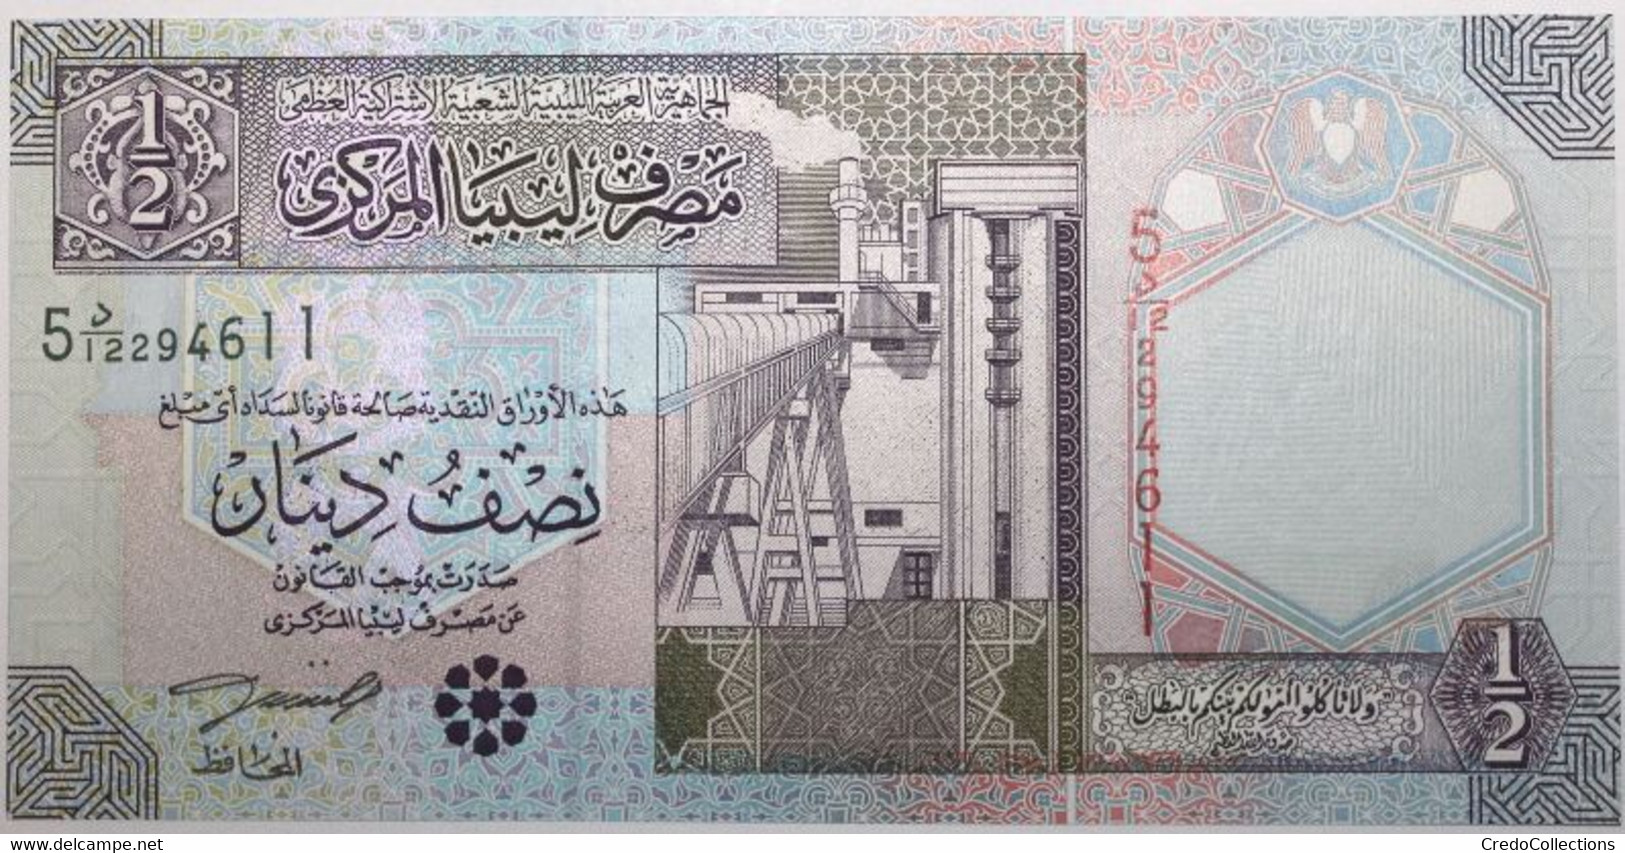 Libye - 0,5 Dinar - 2002 - PICK 63 - NEUF - Libyen